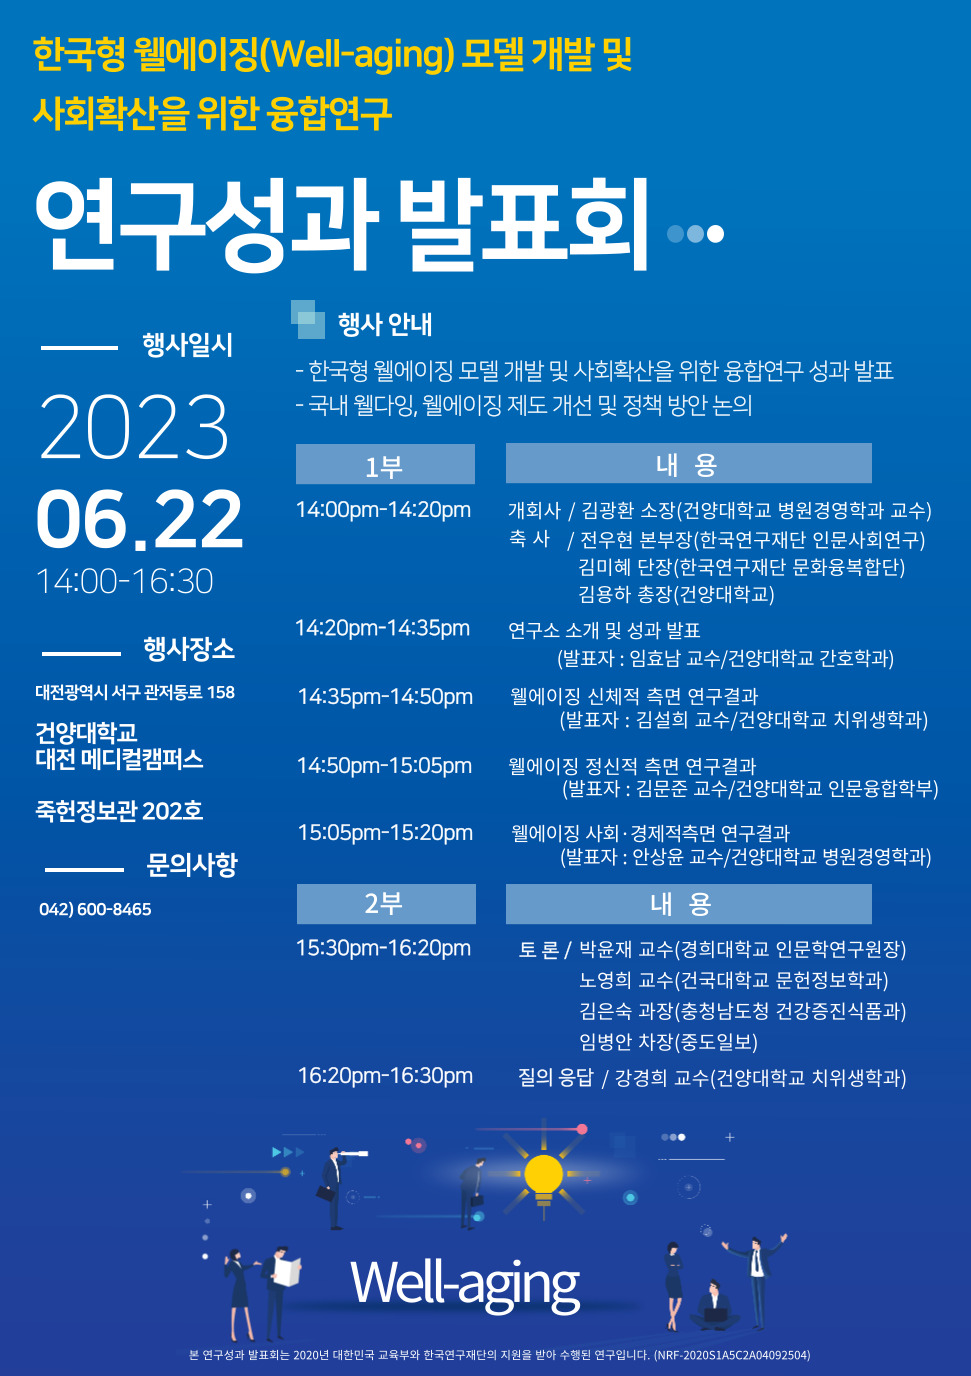 건양대 웰다잉융합연구소, 22일 한국형 웰에이징 연구성과 발표회 개최